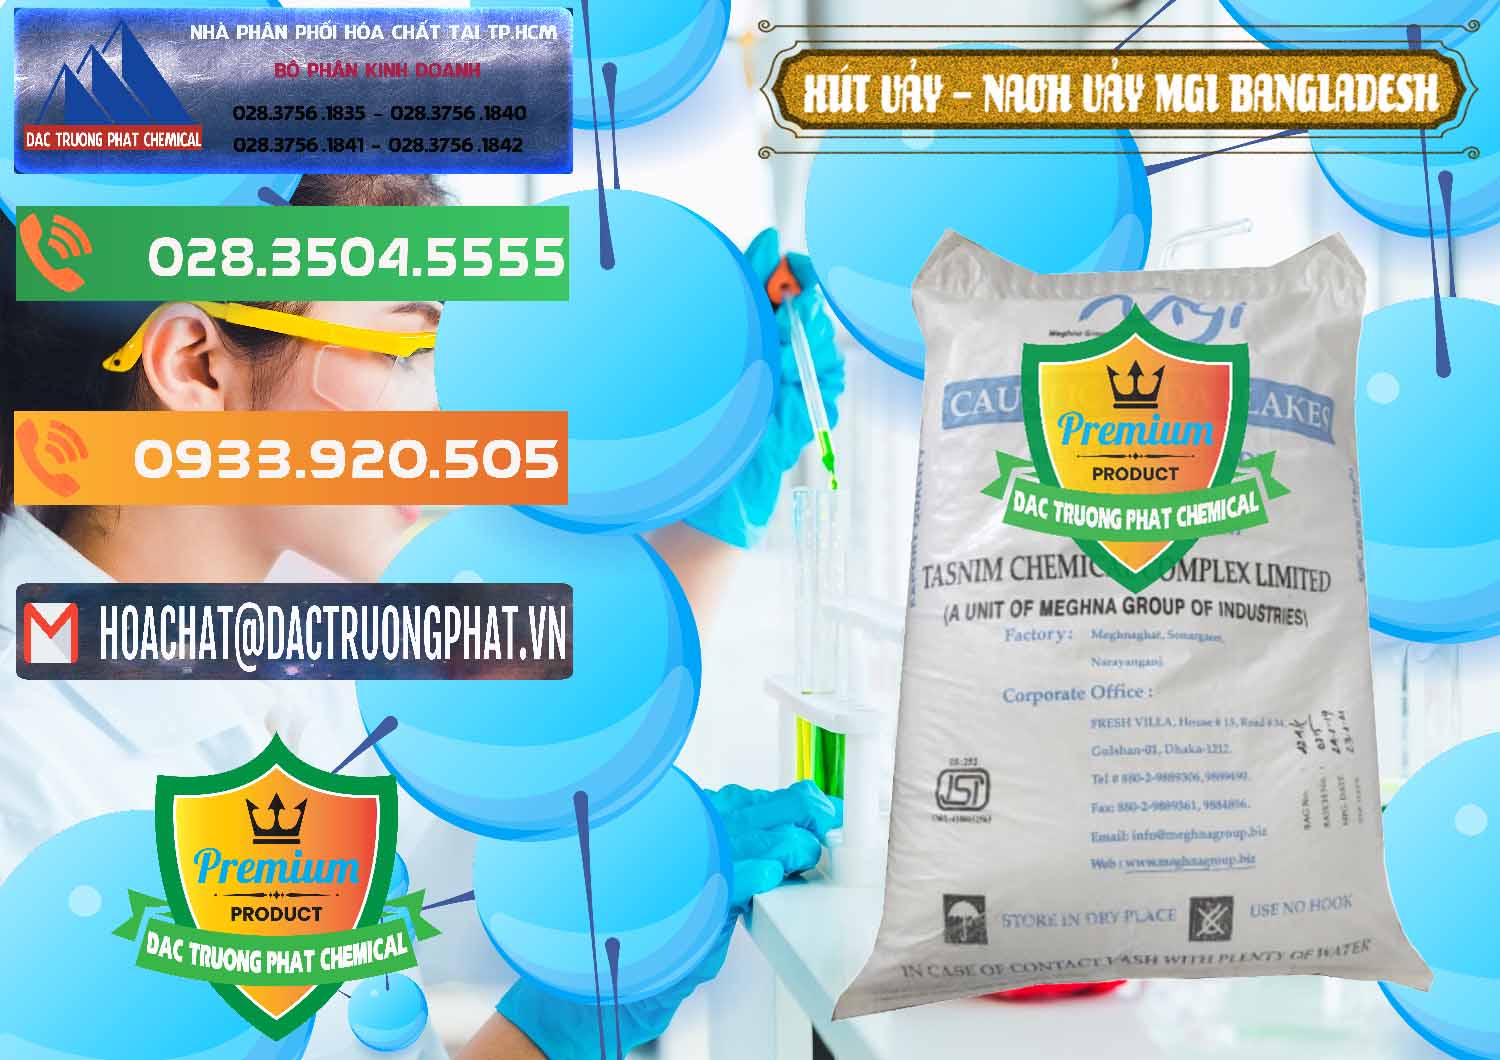 Công ty chuyên bán và phân phối Xút Vảy - NaOH Vảy 99% MGI Bangladesh - 0274 - Cty cung cấp - nhập khẩu hóa chất tại TP.HCM - hoachatxulynuoc.com.vn